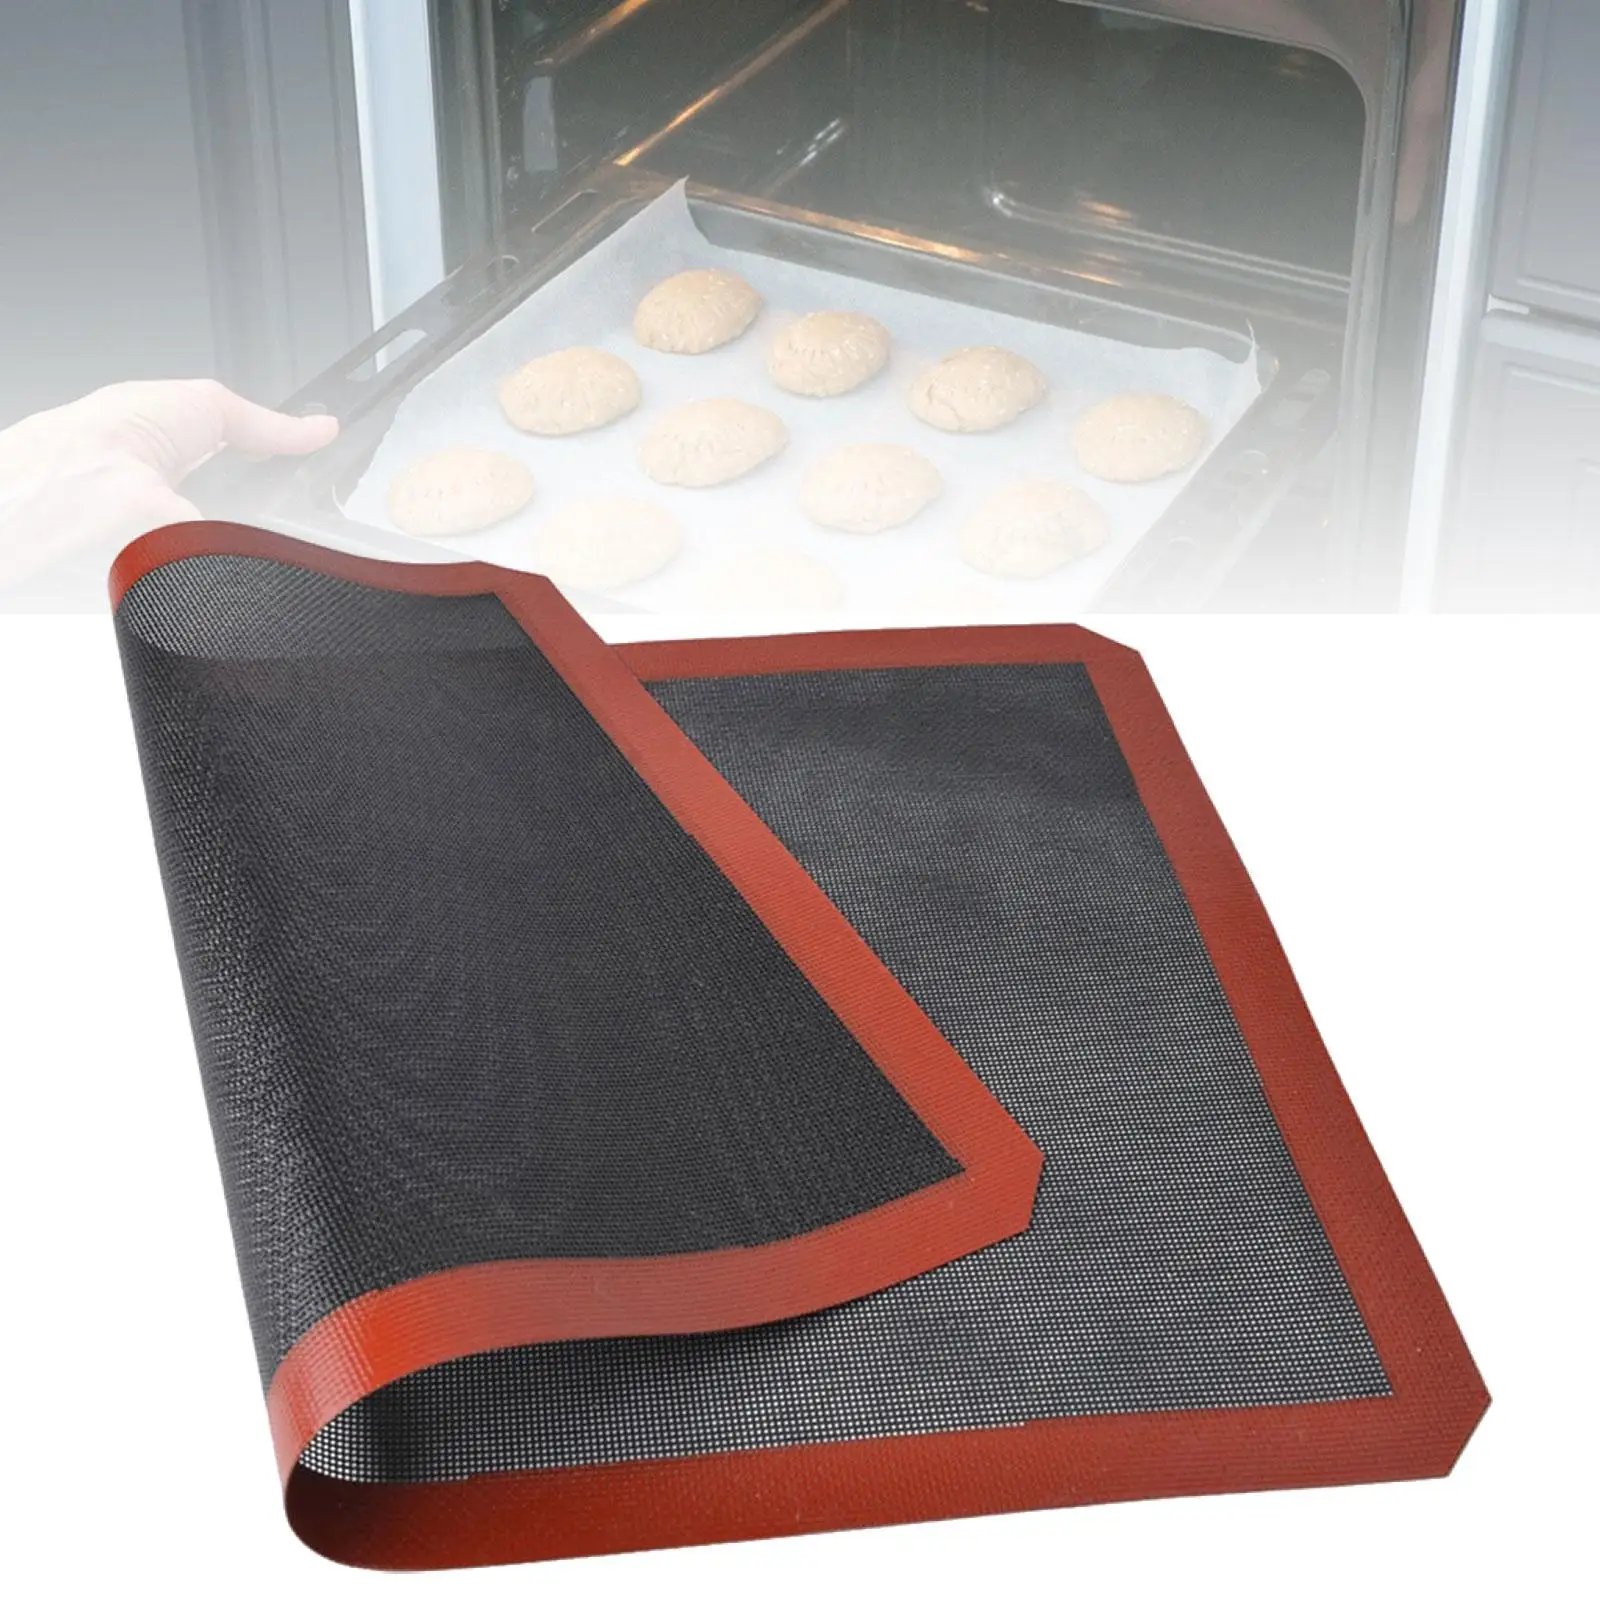 Baking Sheet Mat Breathable Oven Liner Baking Supplies Multifunction Cookie Mat Mat for Home Restaurantchen Tool